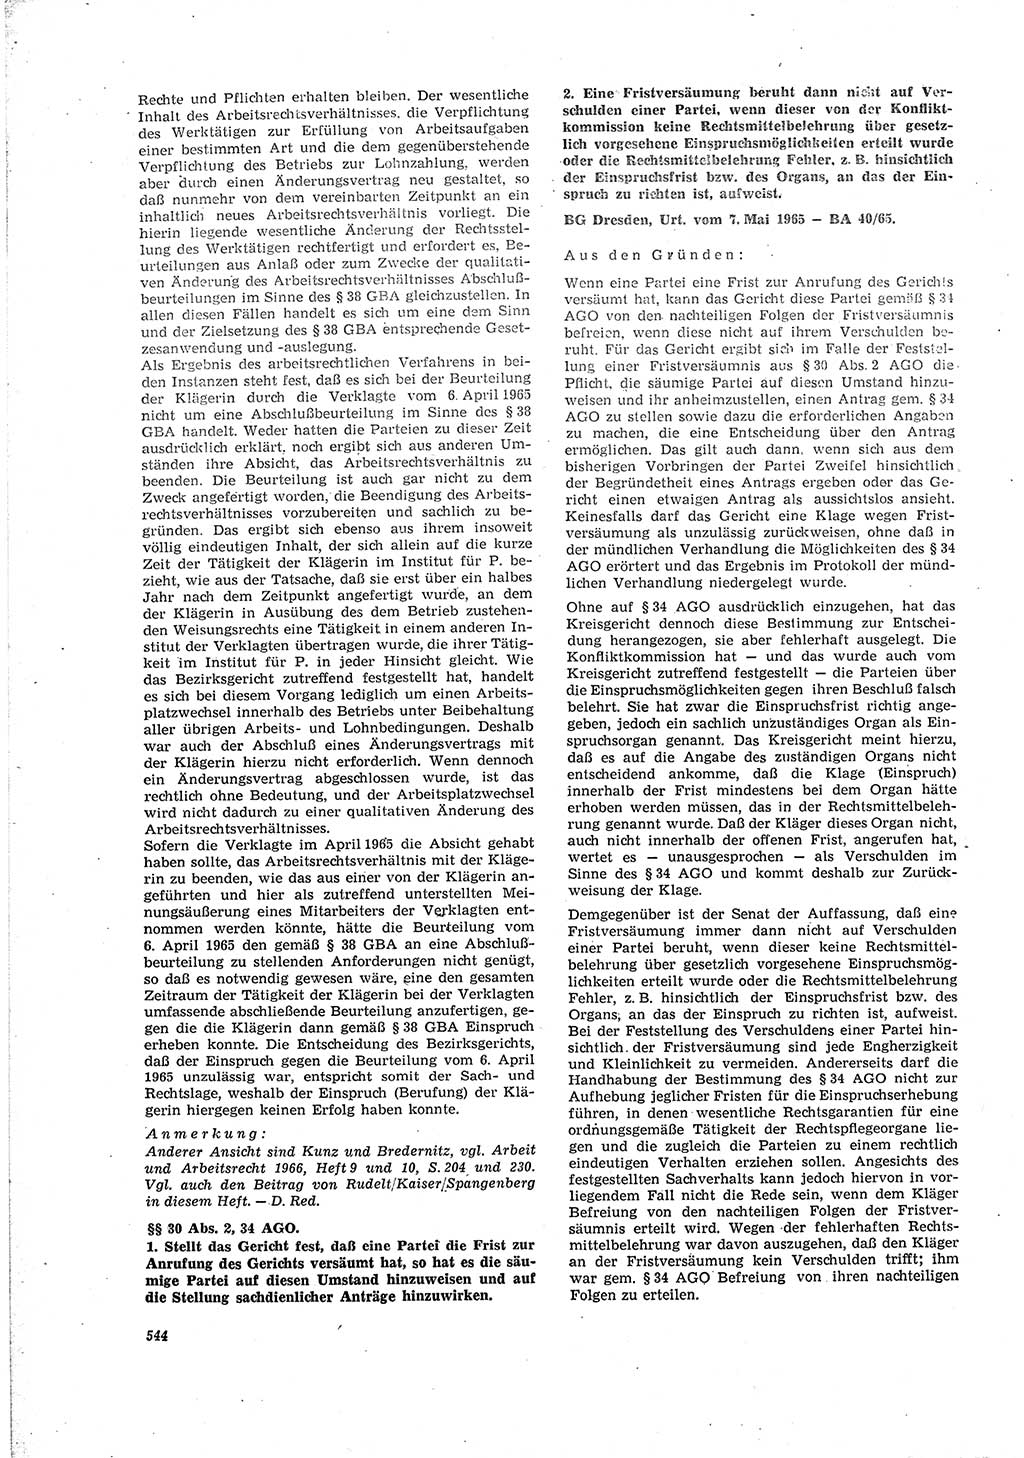 Neue Justiz (NJ), Zeitschrift für Recht und Rechtswissenschaft [Deutsche Demokratische Republik (DDR)], 20. Jahrgang 1966, Seite 544 (NJ DDR 1966, S. 544)